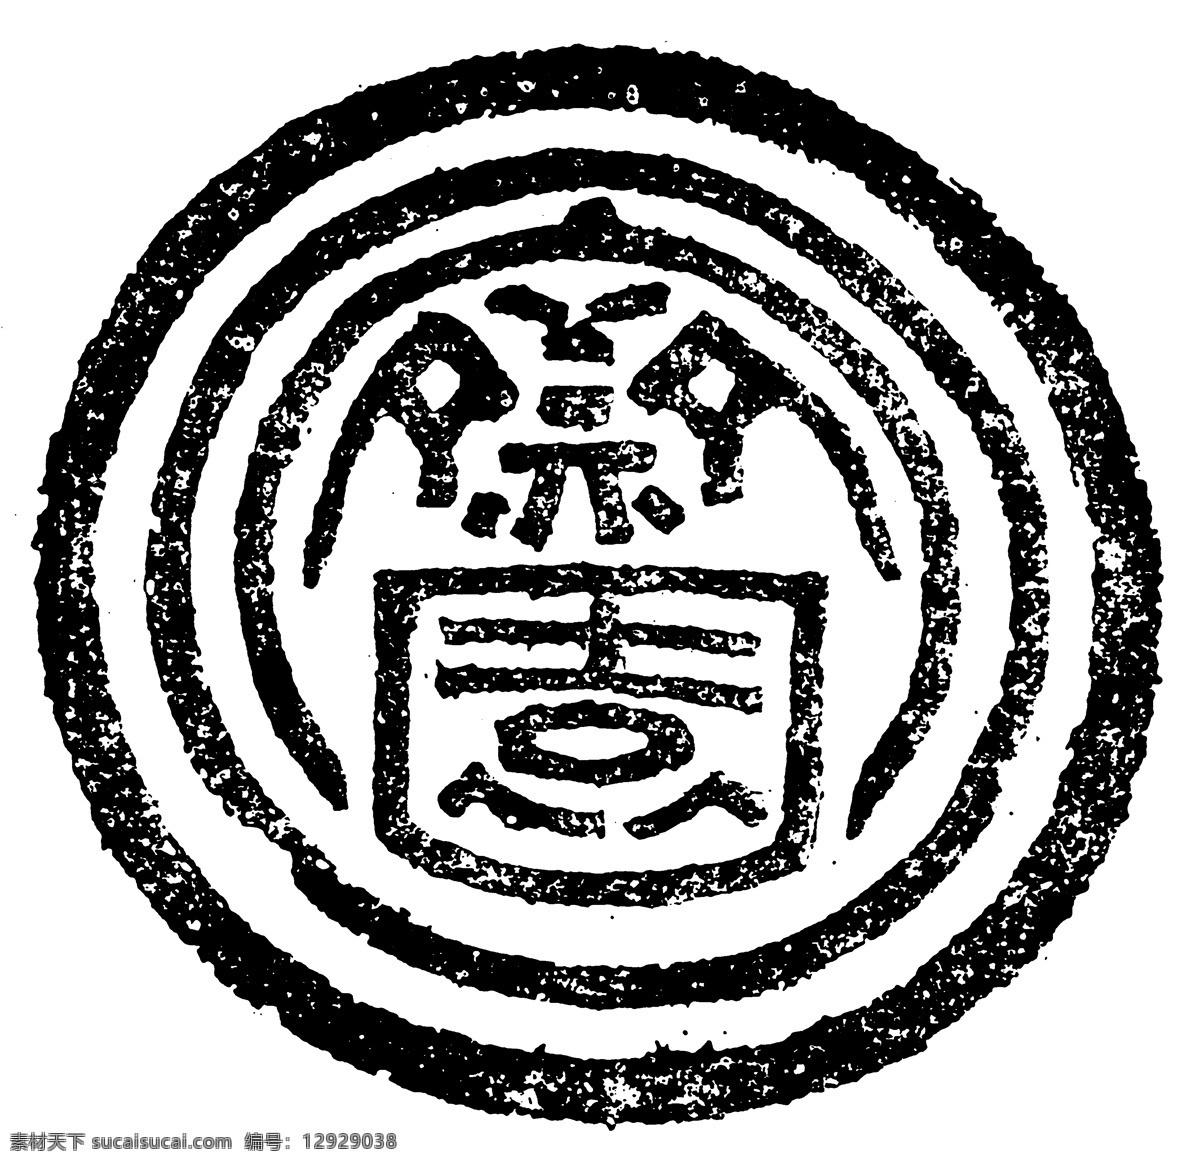 瓦当图案 秦汉时期图案 中国传统图案 图案164 图案 设计素材 瓦当纹饰 装饰图案 书画美术 白色